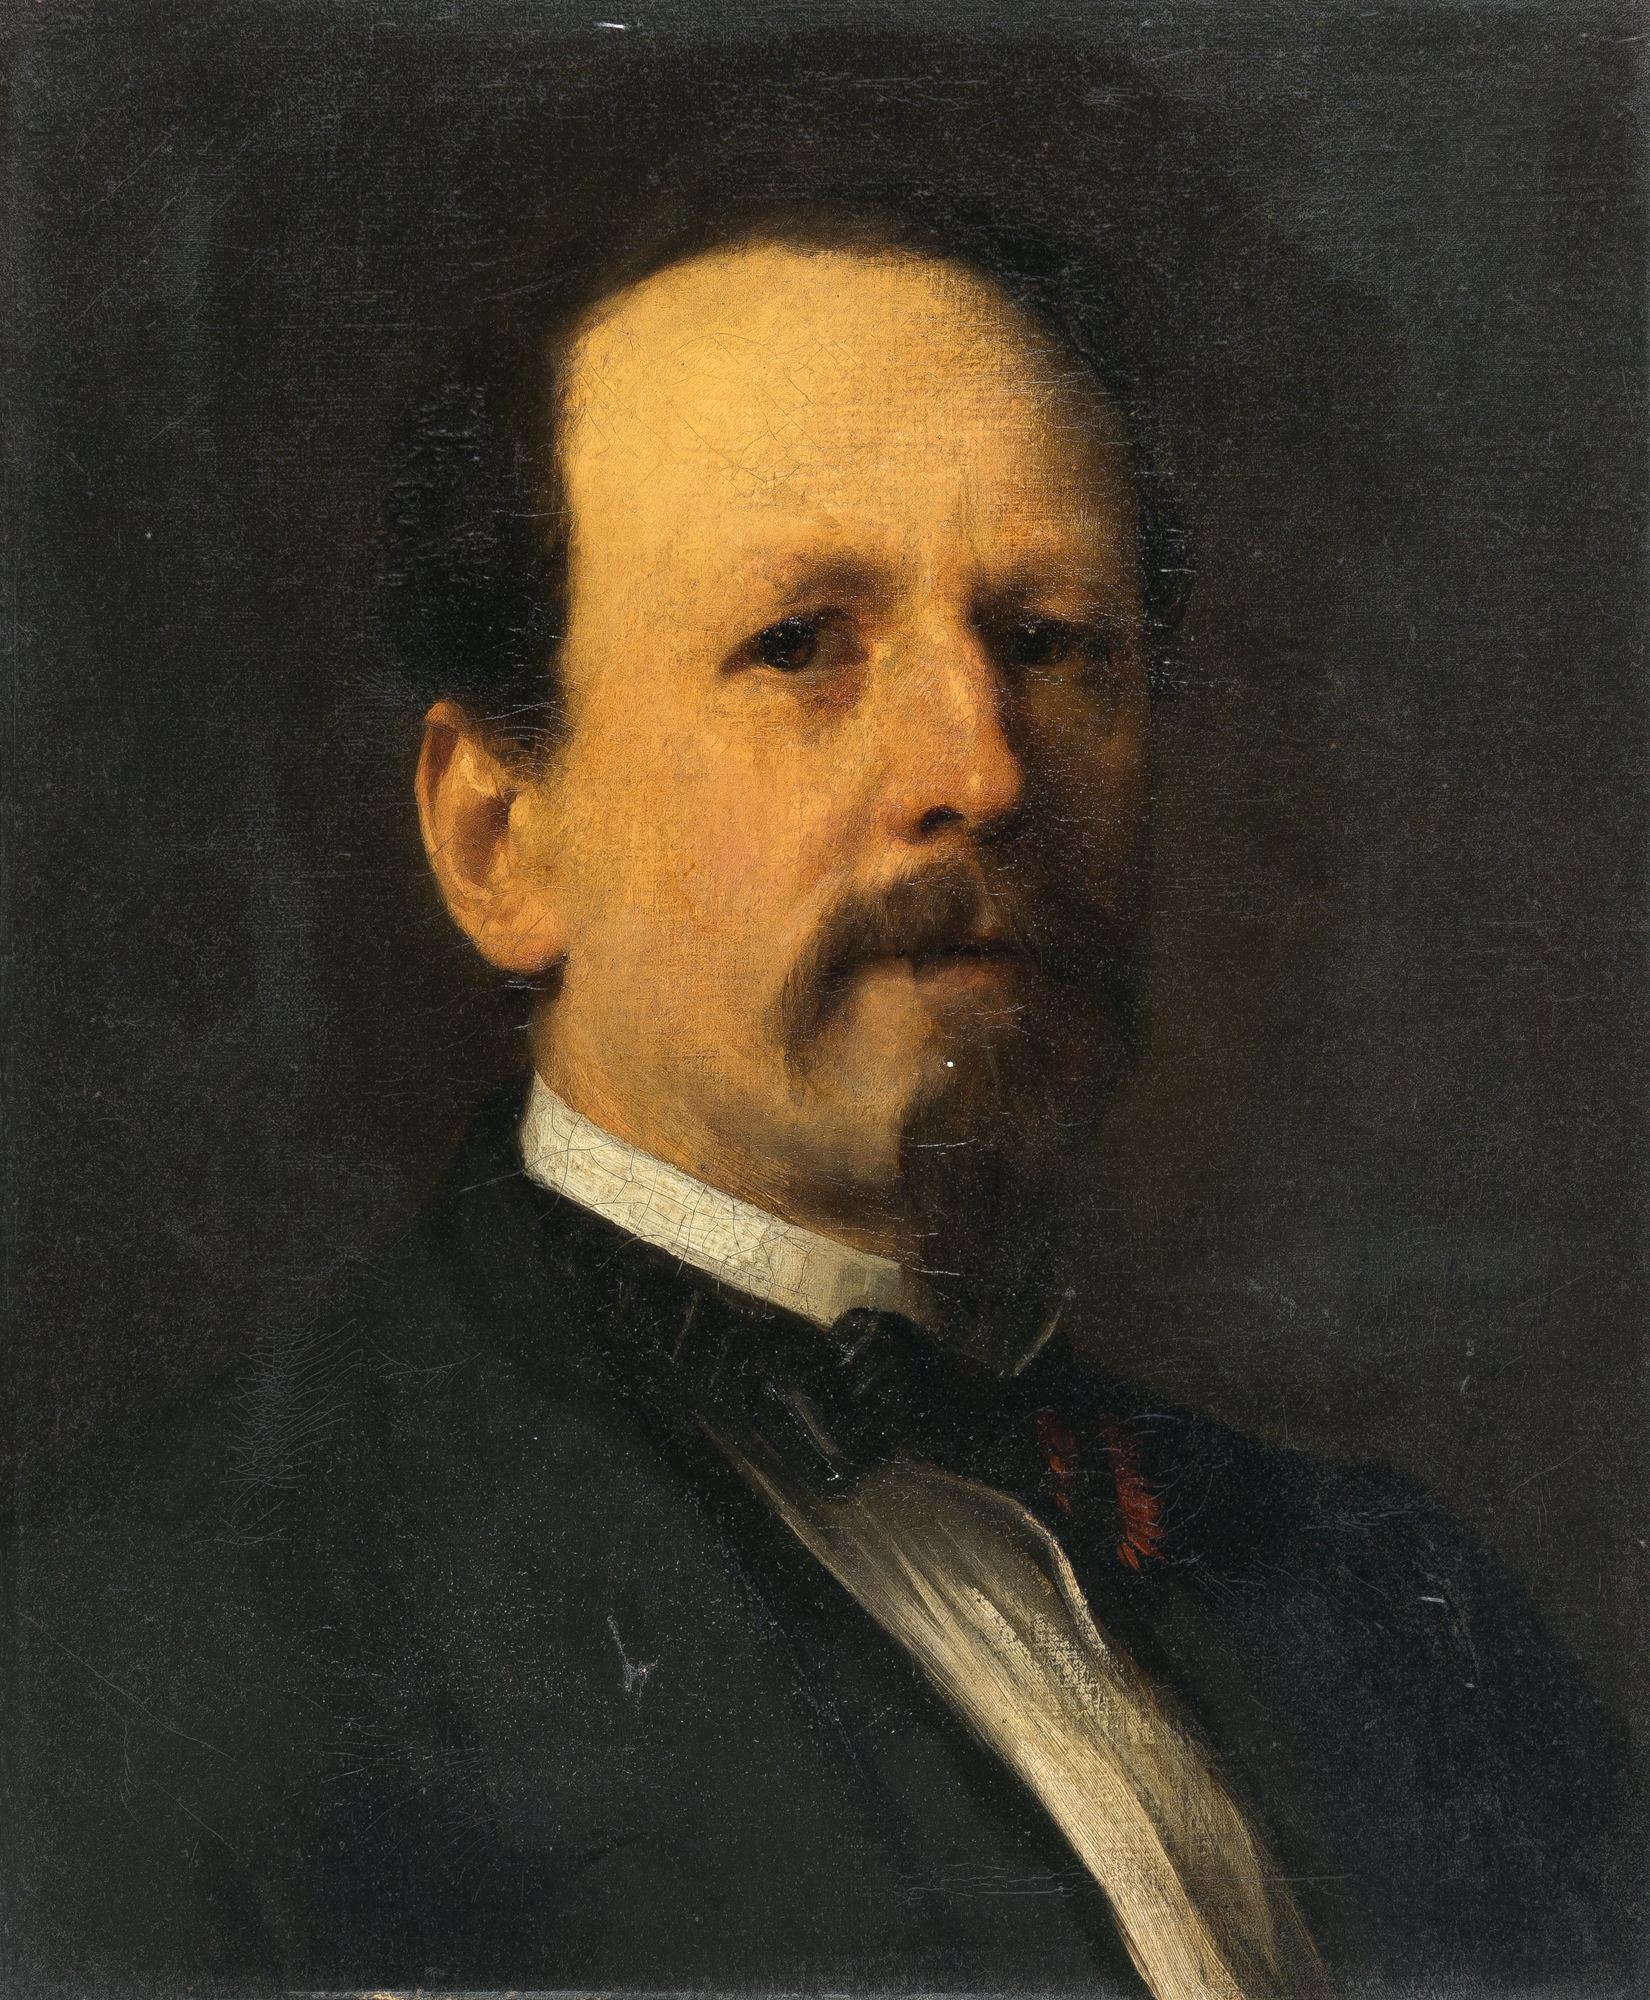 Portrait of a gentleman by Franz Seraph von Lenbach, 1861